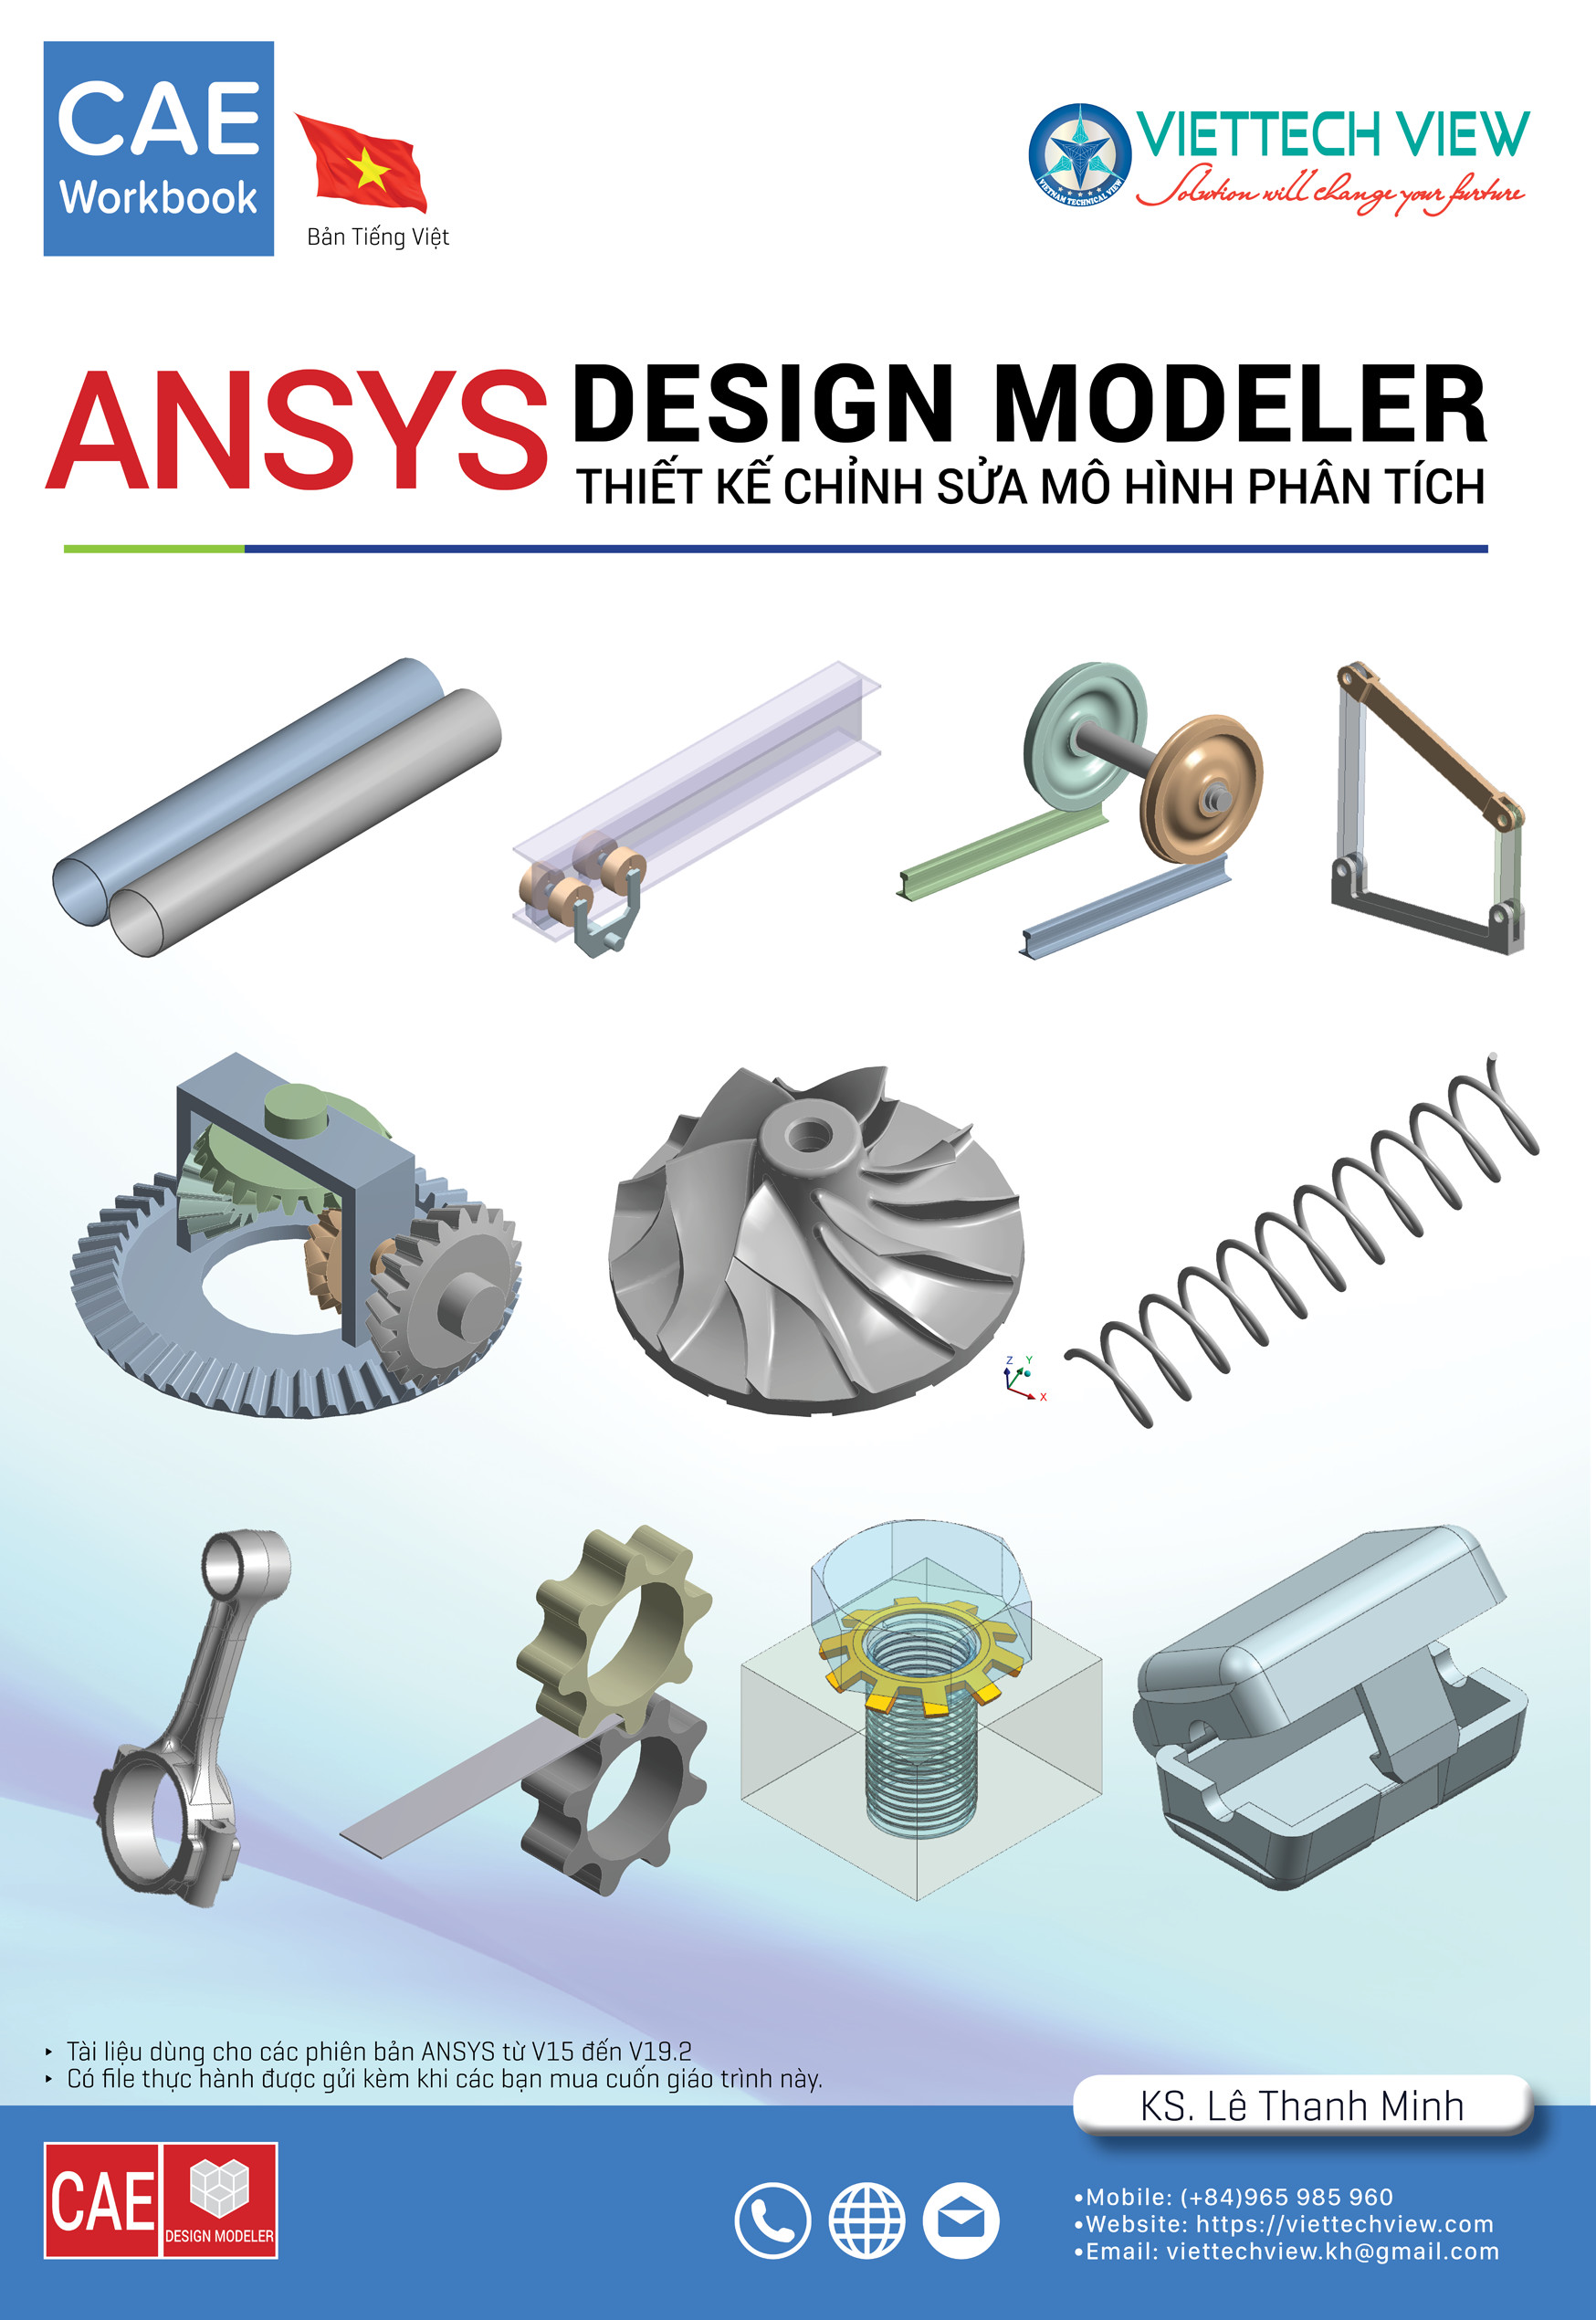 ANSYS Workbench_Design Modeler_-27-11-2019-09-46-02.jpg